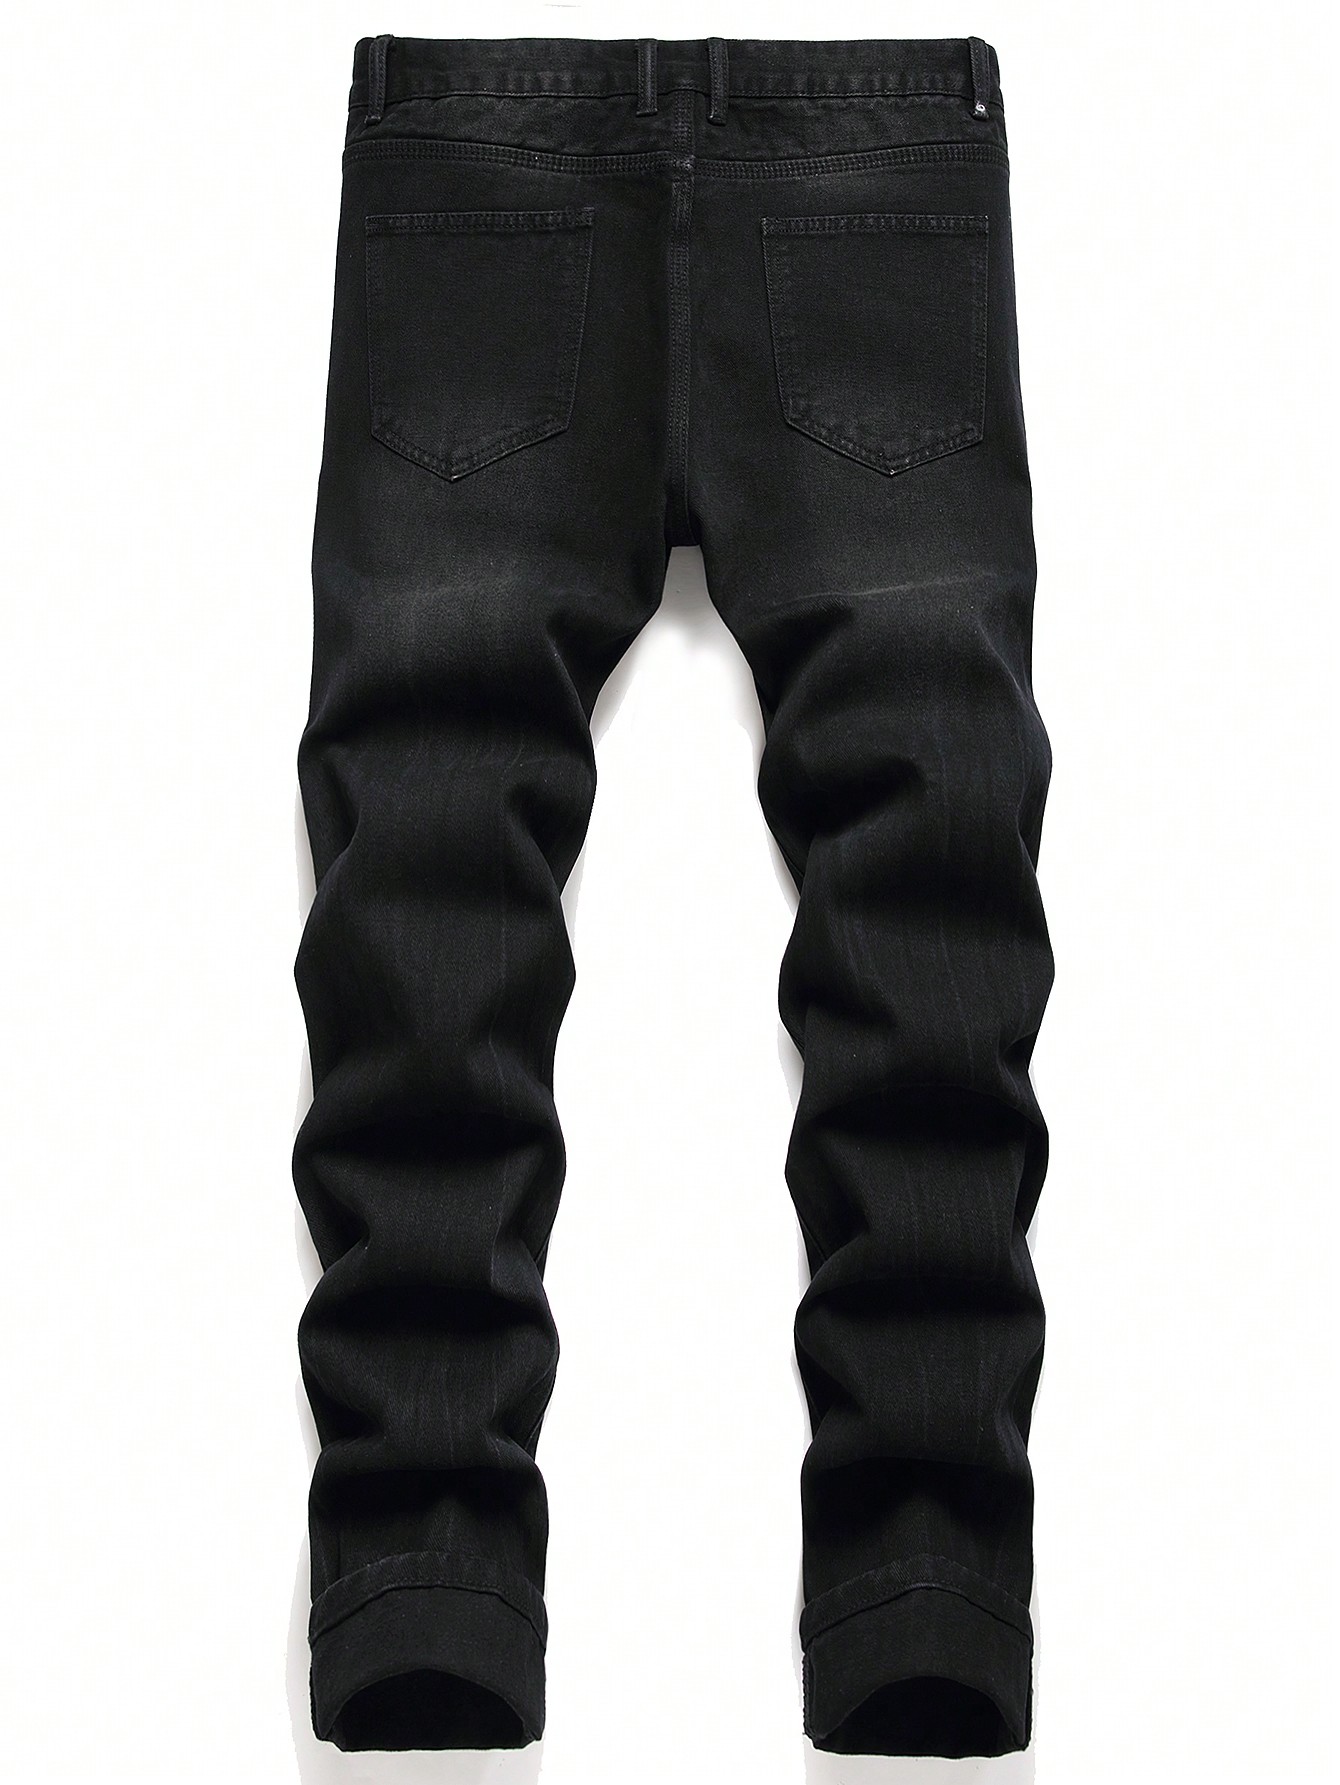 Мужские повседневные джинсы из денима с вышивкой в ​​виде букв и медведей и потертыми деталями, черный джинсы мужские стрейчевые в стиле ретро модные дизайнерские рваные джинсы slim fit винтажные повседневные хлопковые штаны черные серые